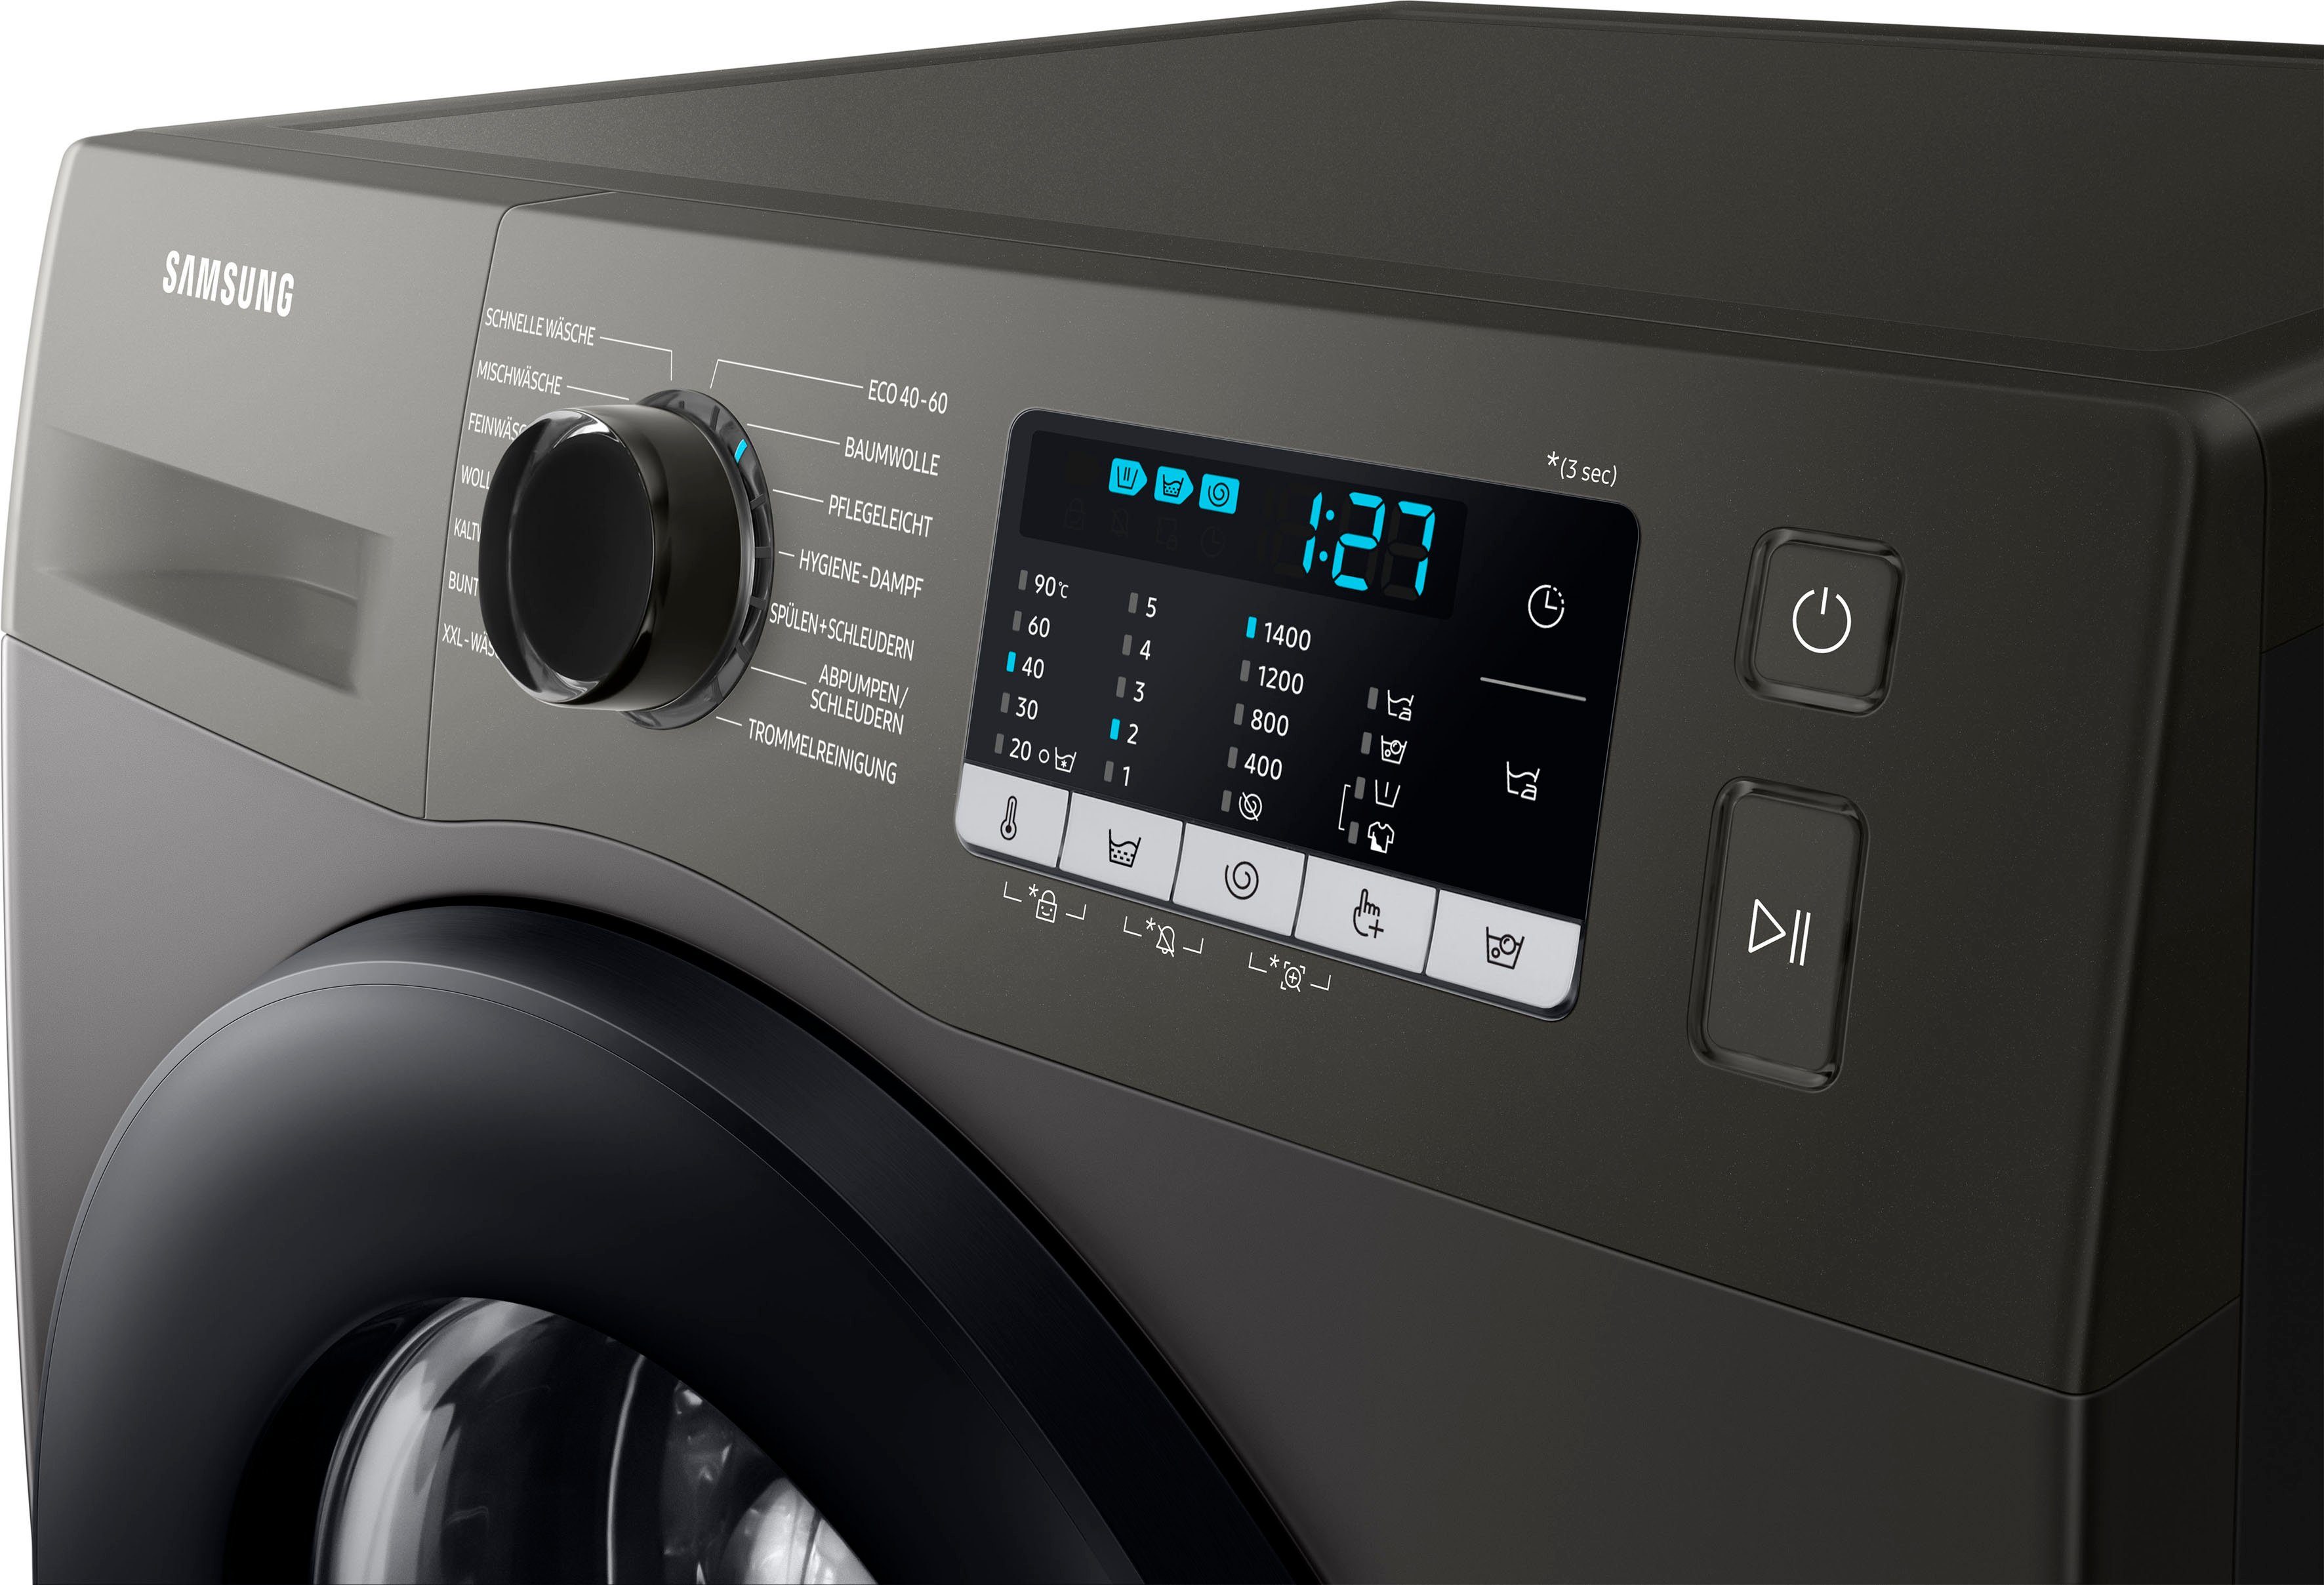 kg, FleckenIntensiv-Funktion 7 INOX Waschmaschine WW5000T WW70TA049AX, 1400 U/min, Samsung